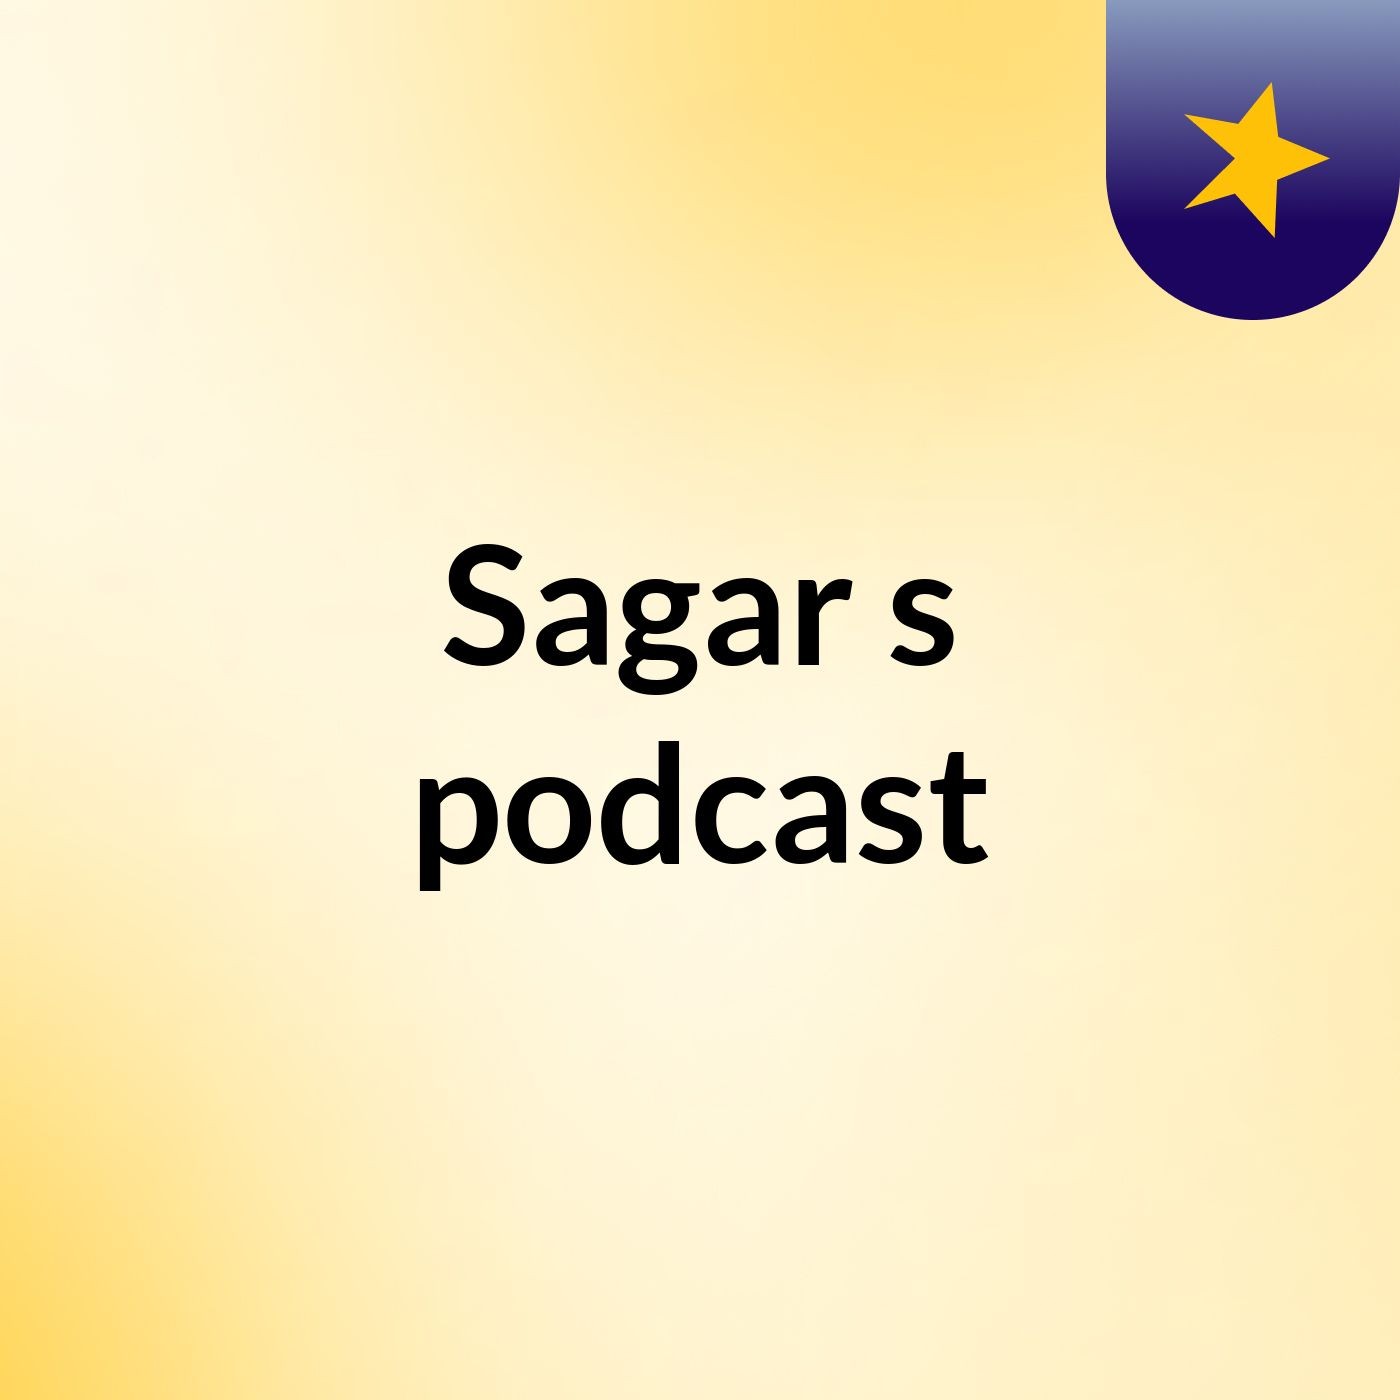 Sagar's podcast